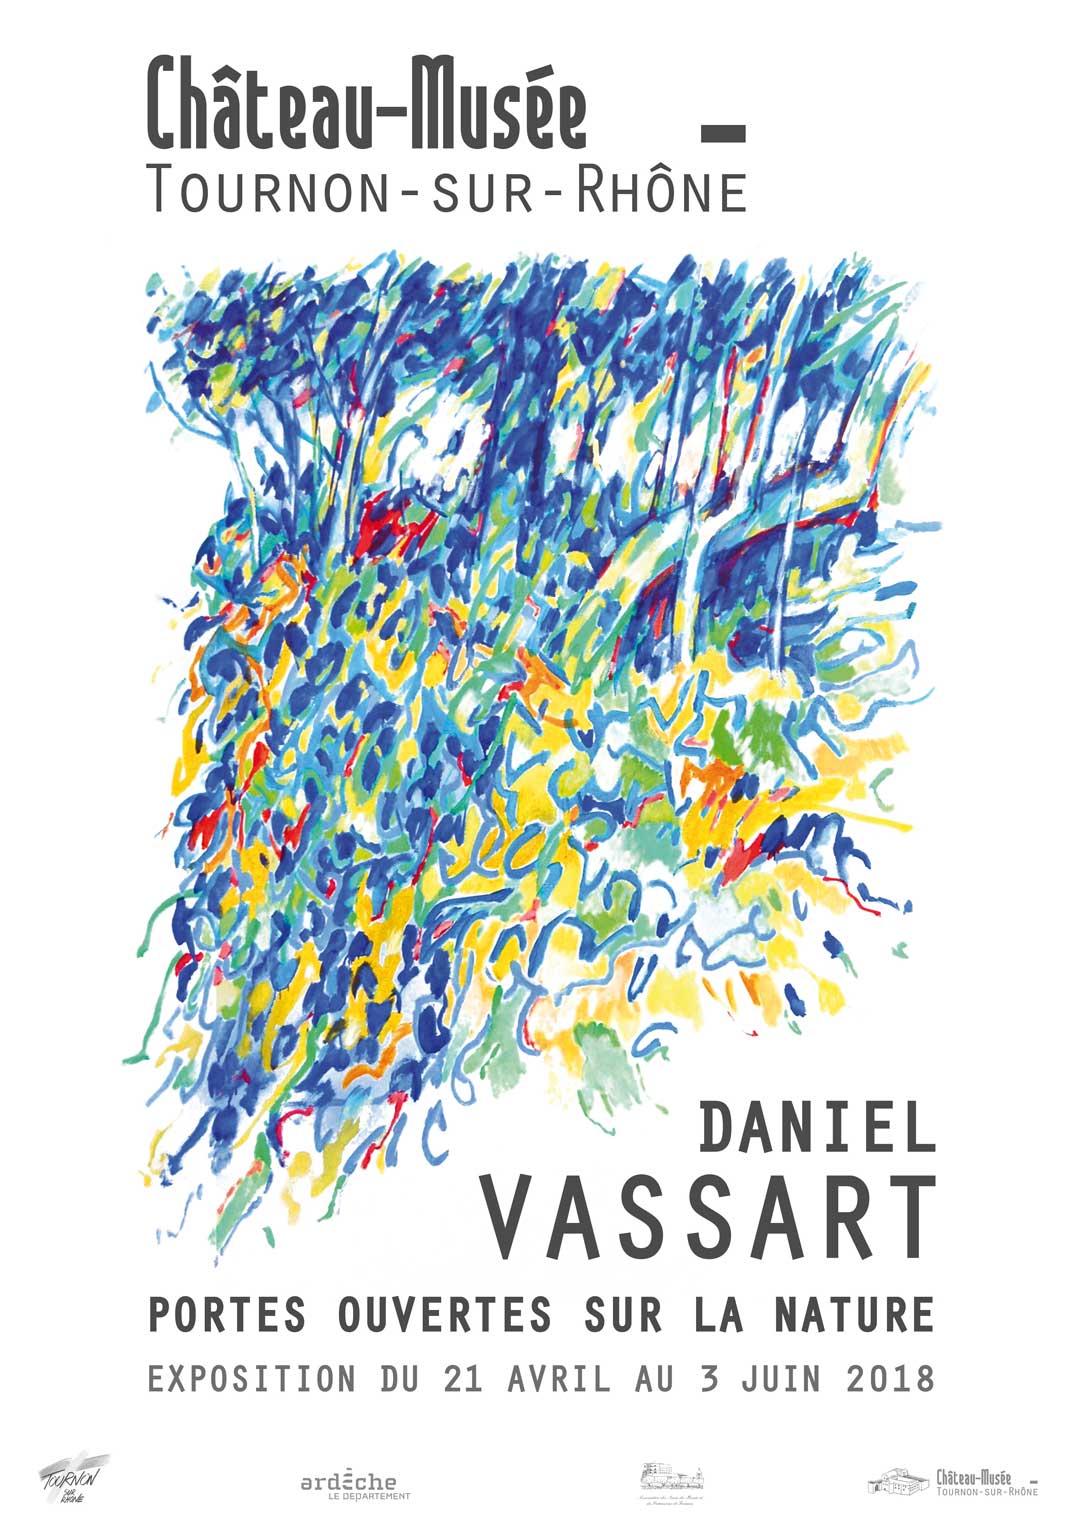 DANIEL VASSART. Portes ouvertes sur la nature. Du 21 avril au 3 juin au Château-musée.